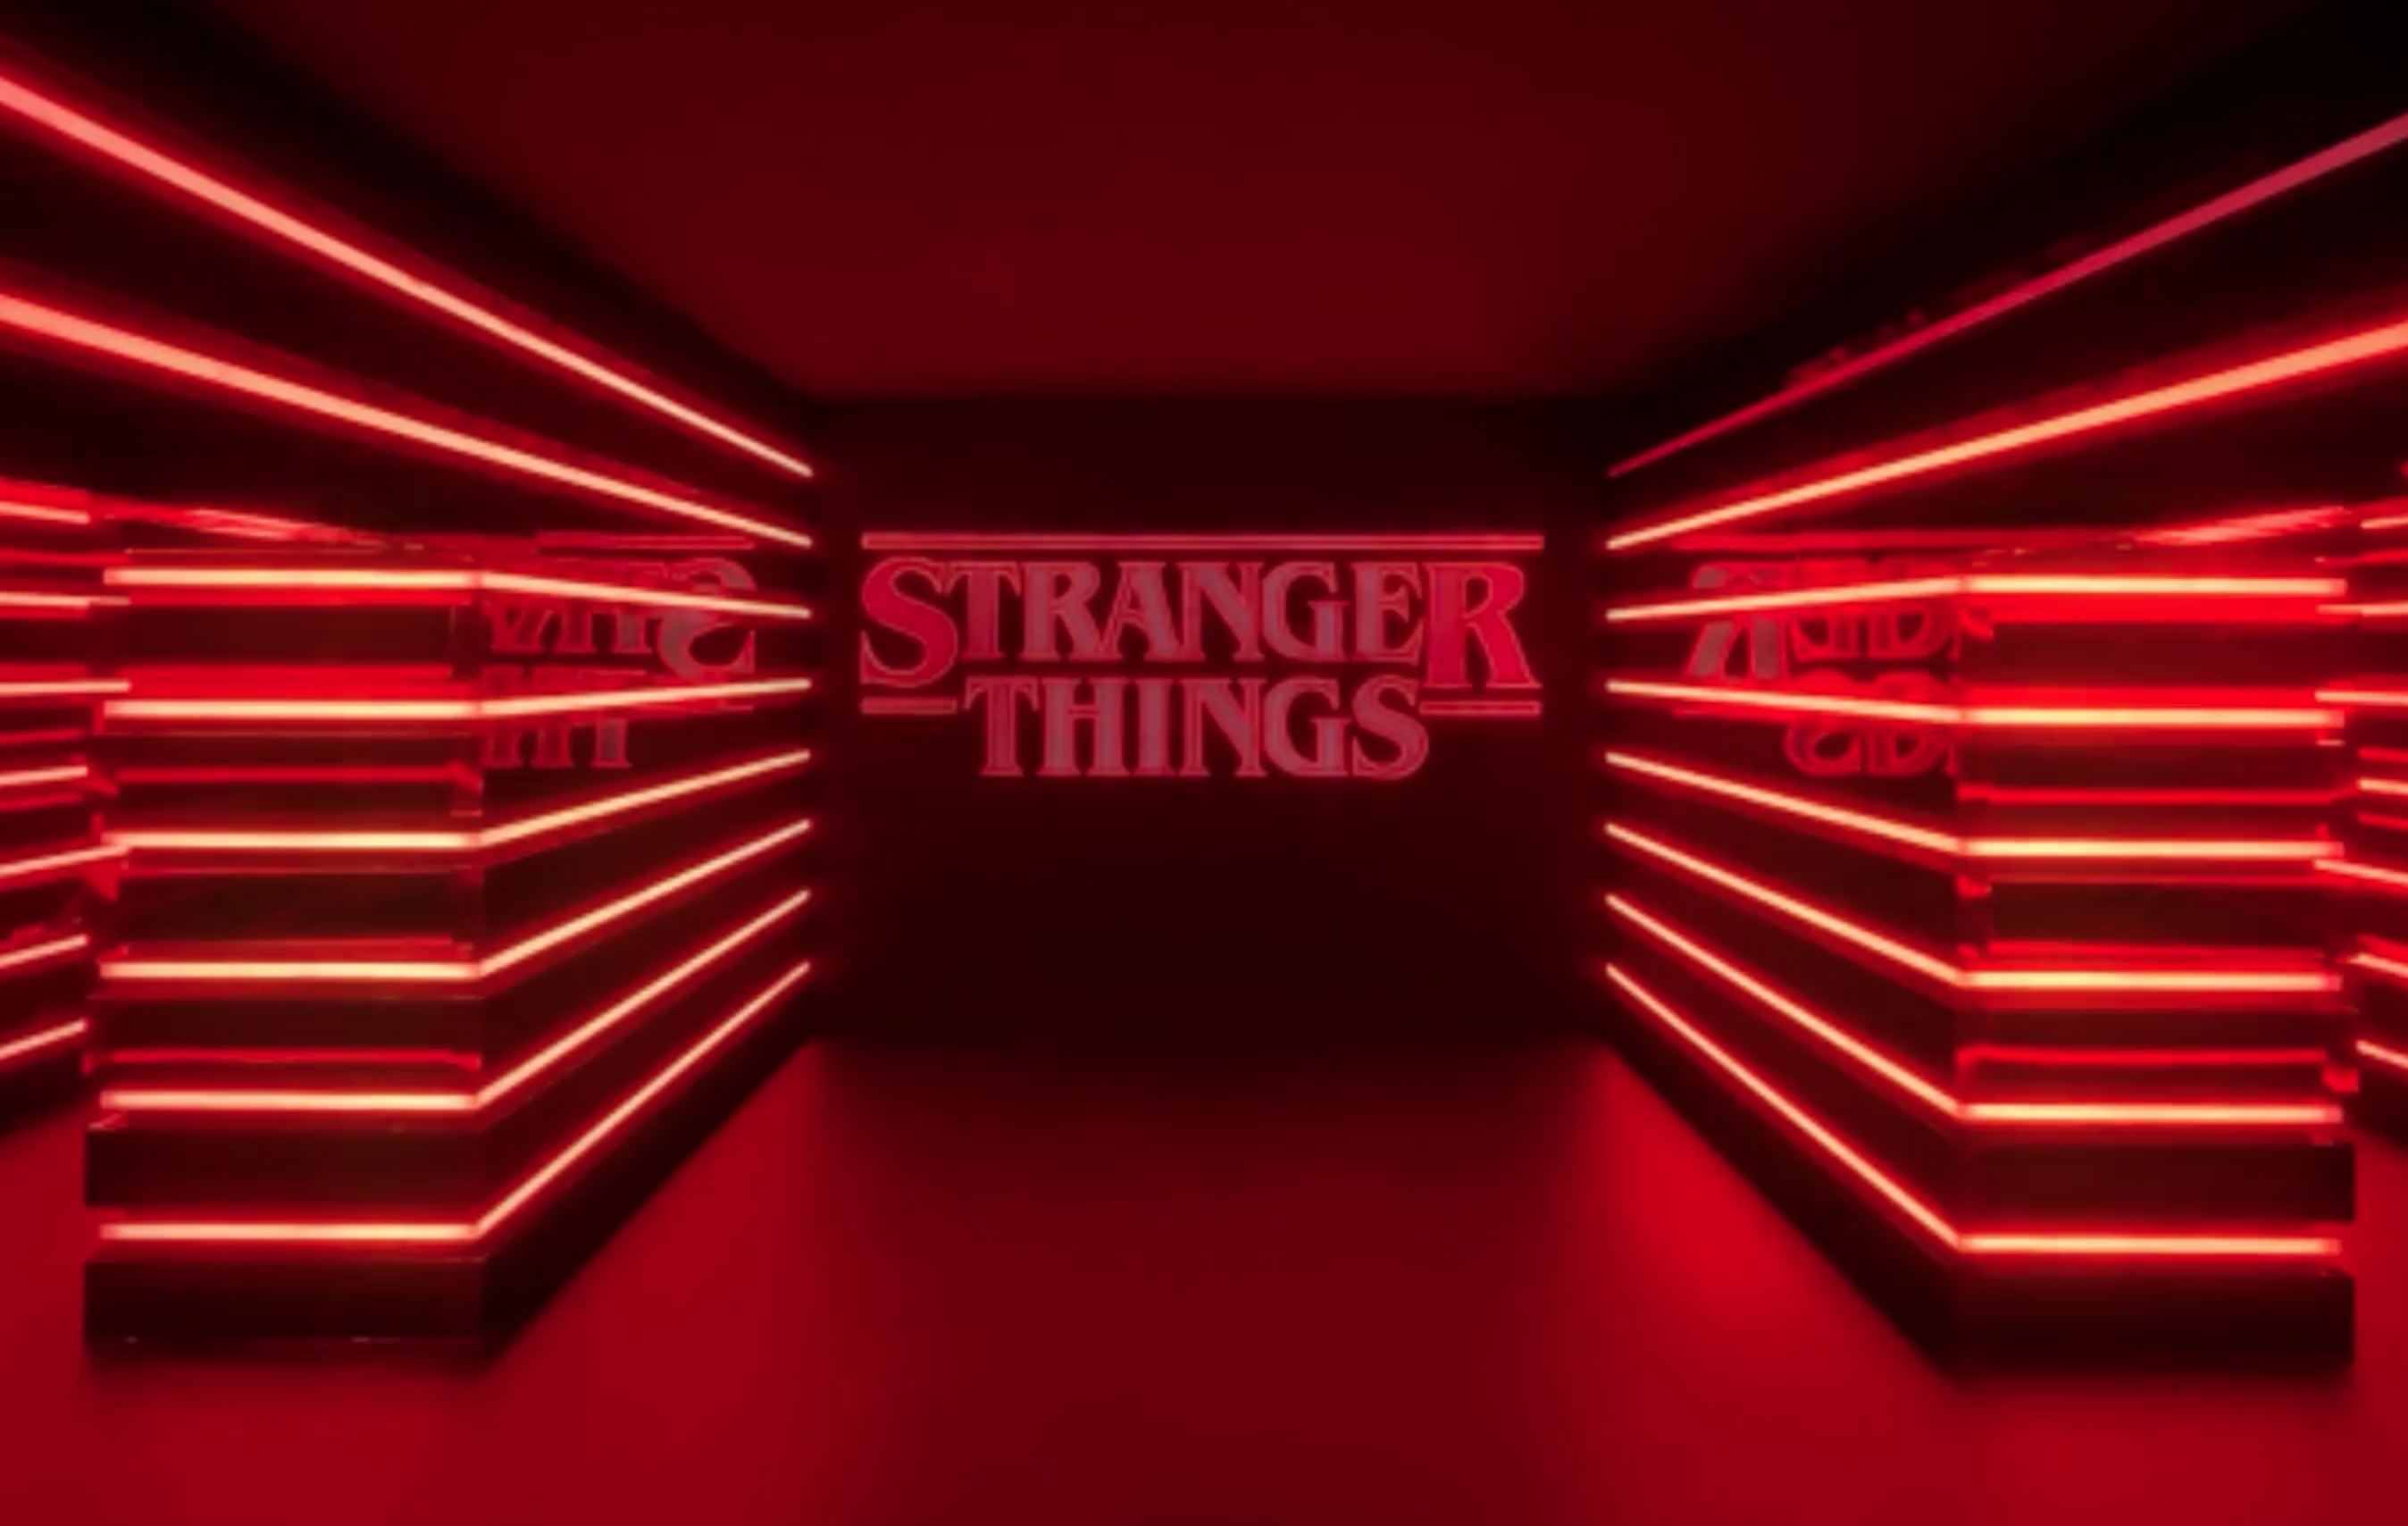 “Stranger Things” tendrá tienda en Miami: cuándo abre y cómo reservar una visita